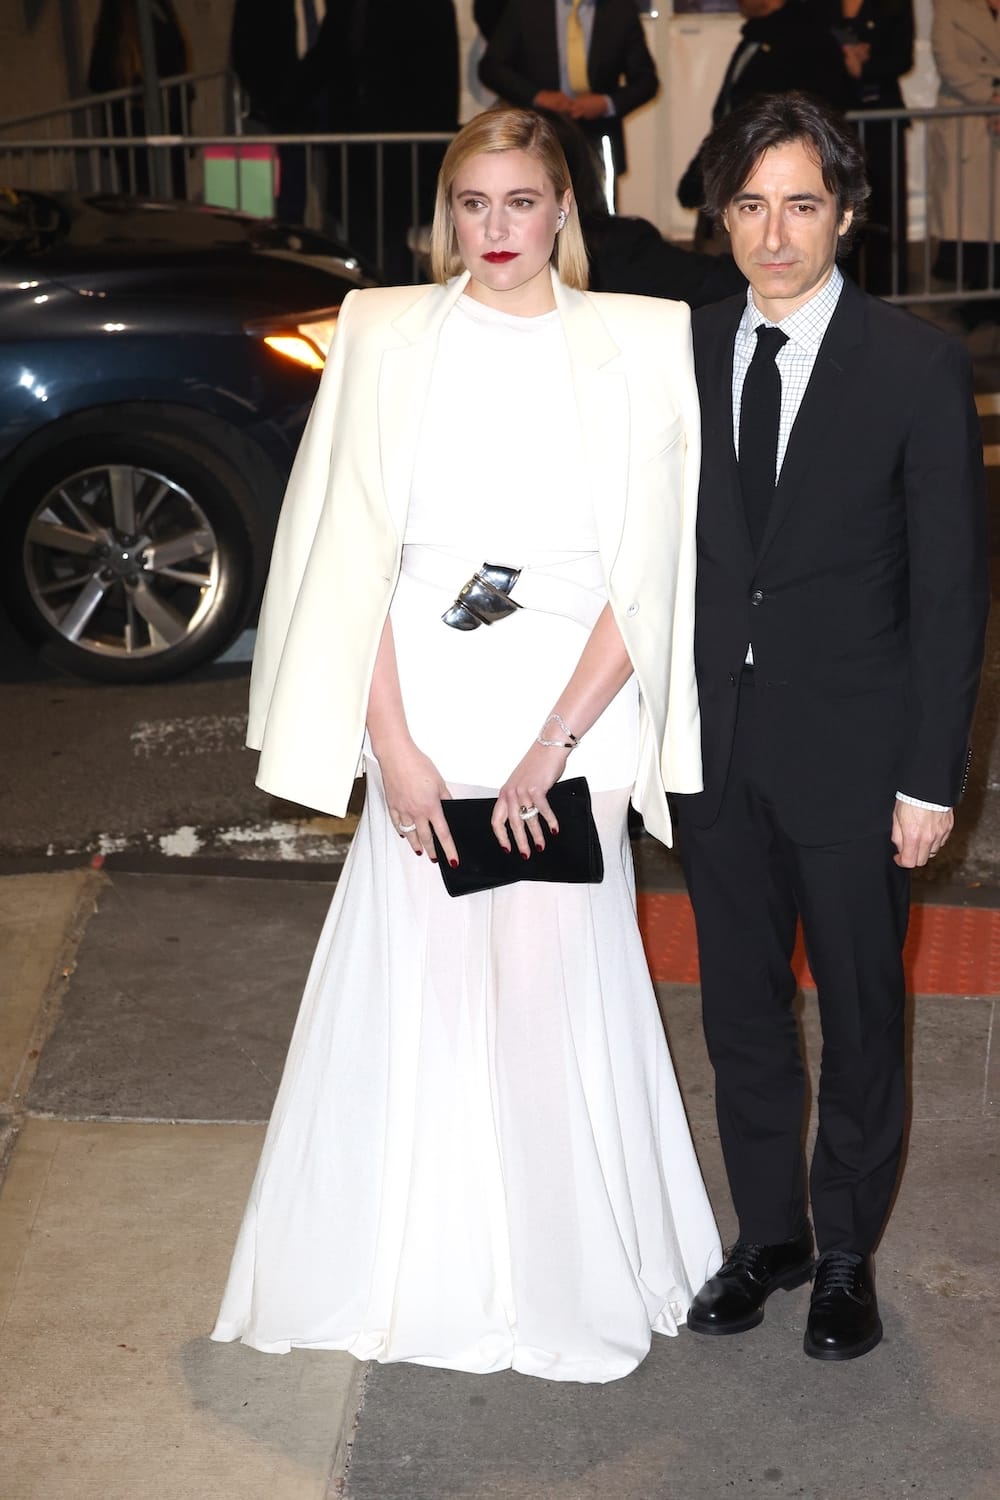 Greta Gerwig and Boyfriend Noah Baumbach at The 2023 Gotham Awards